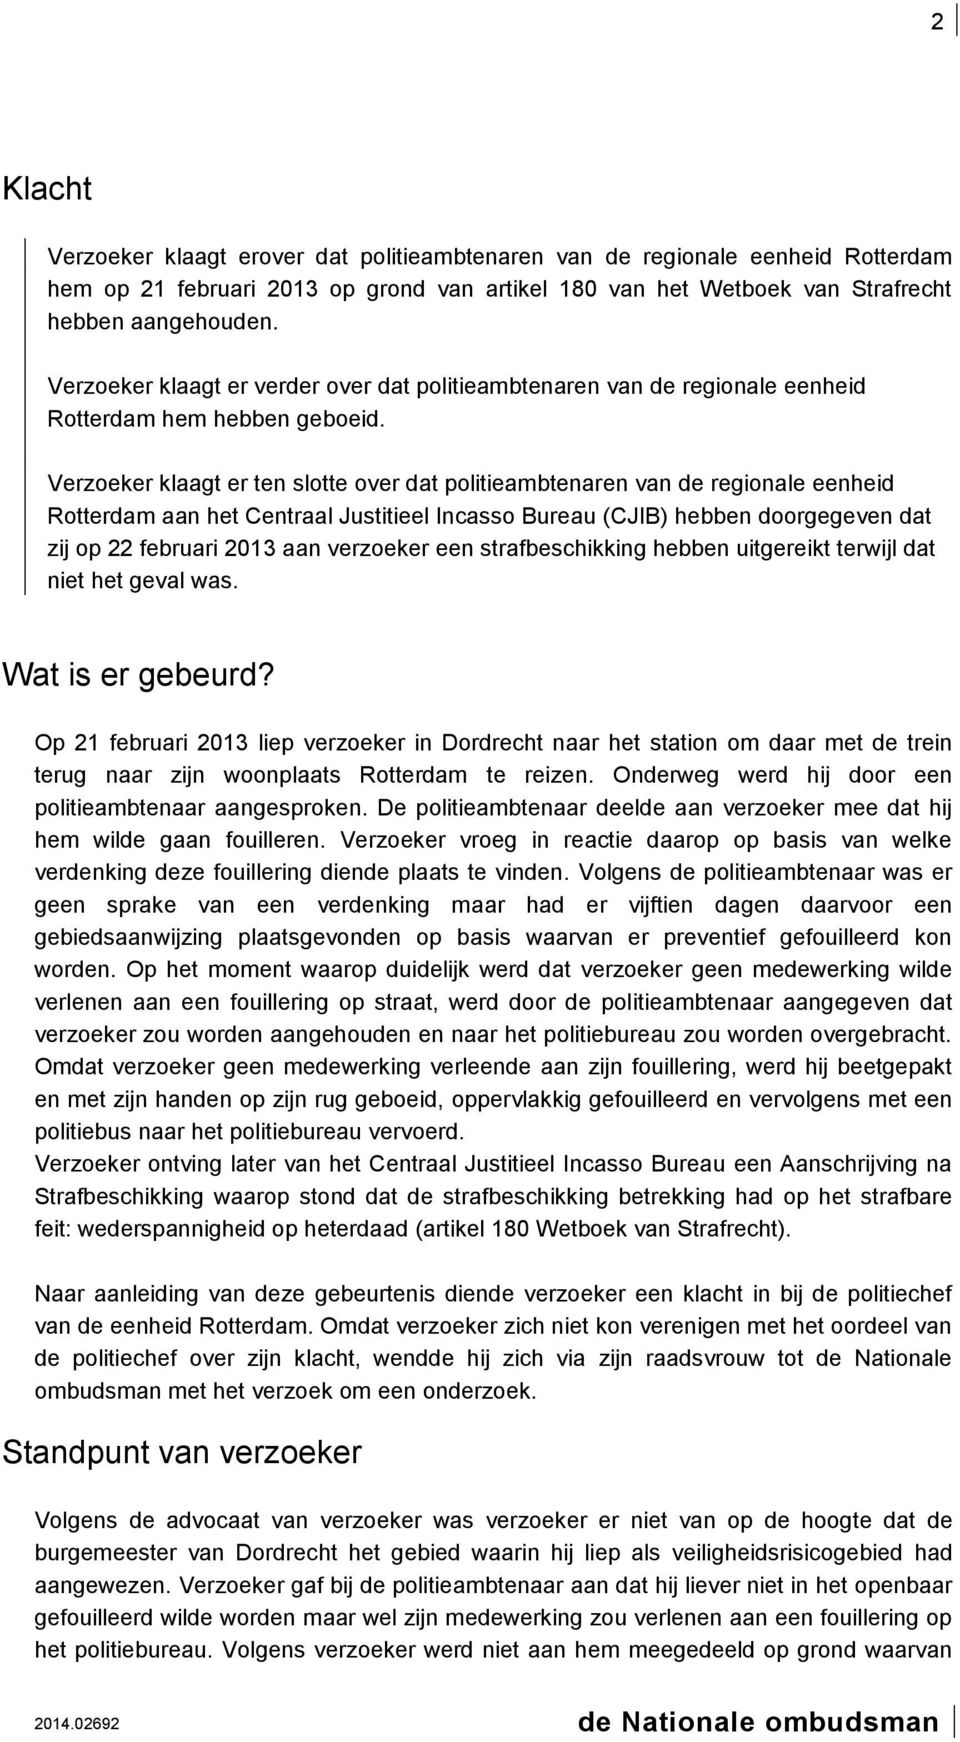 Verzoeker klaagt er ten slotte over dat politieambtenaren van de regionale eenheid Rotterdam aan het Centraal Justitieel Incasso Bureau (CJIB) hebben doorgegeven dat zij op 22 februari 2013 aan